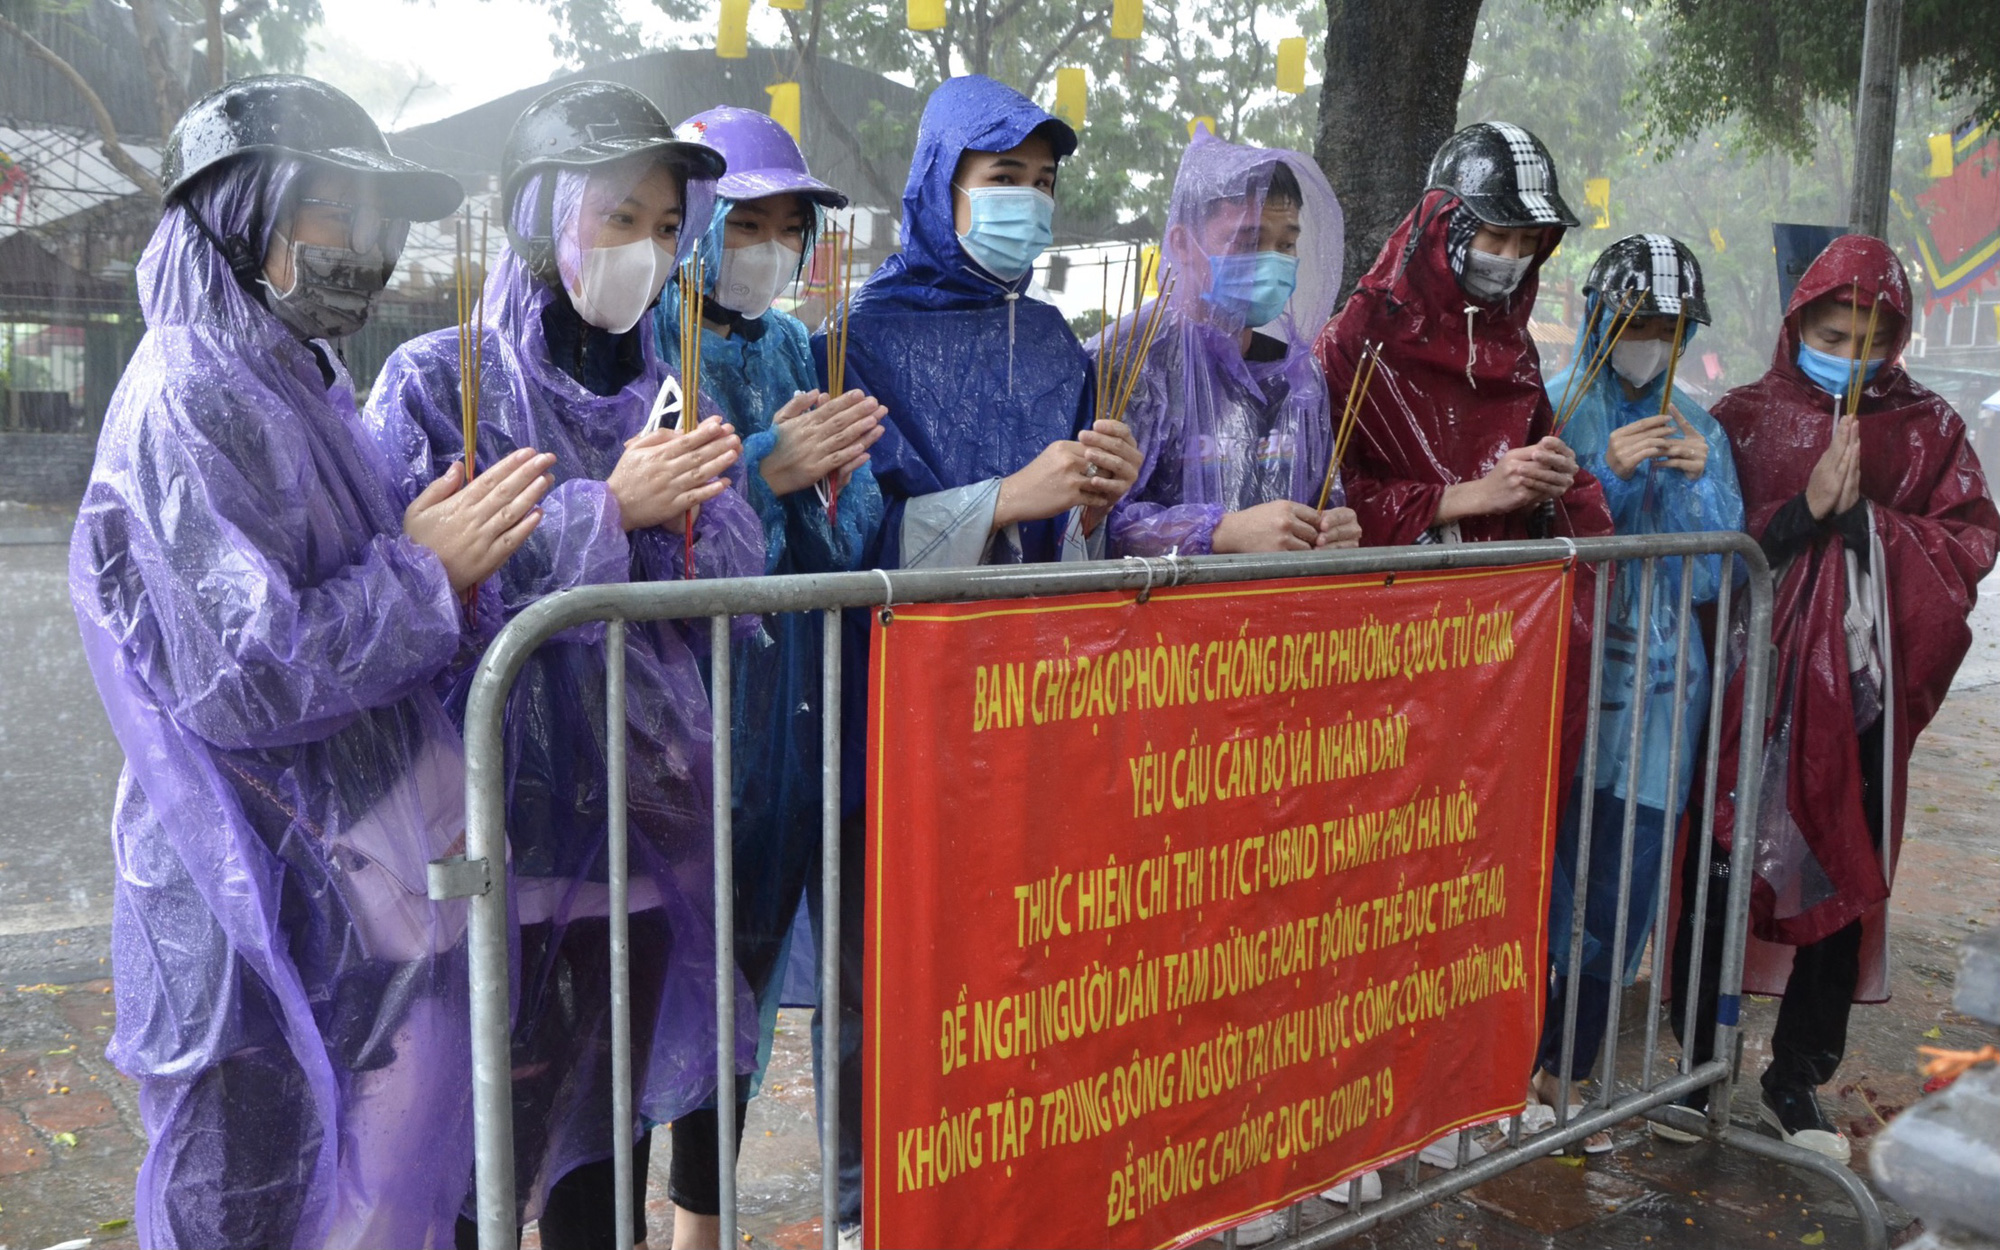 Cận cảnh các sĩ tử đội mưa to vái vọng ở Văn Miếu trước kỳ thi THPT - Ảnh 7.